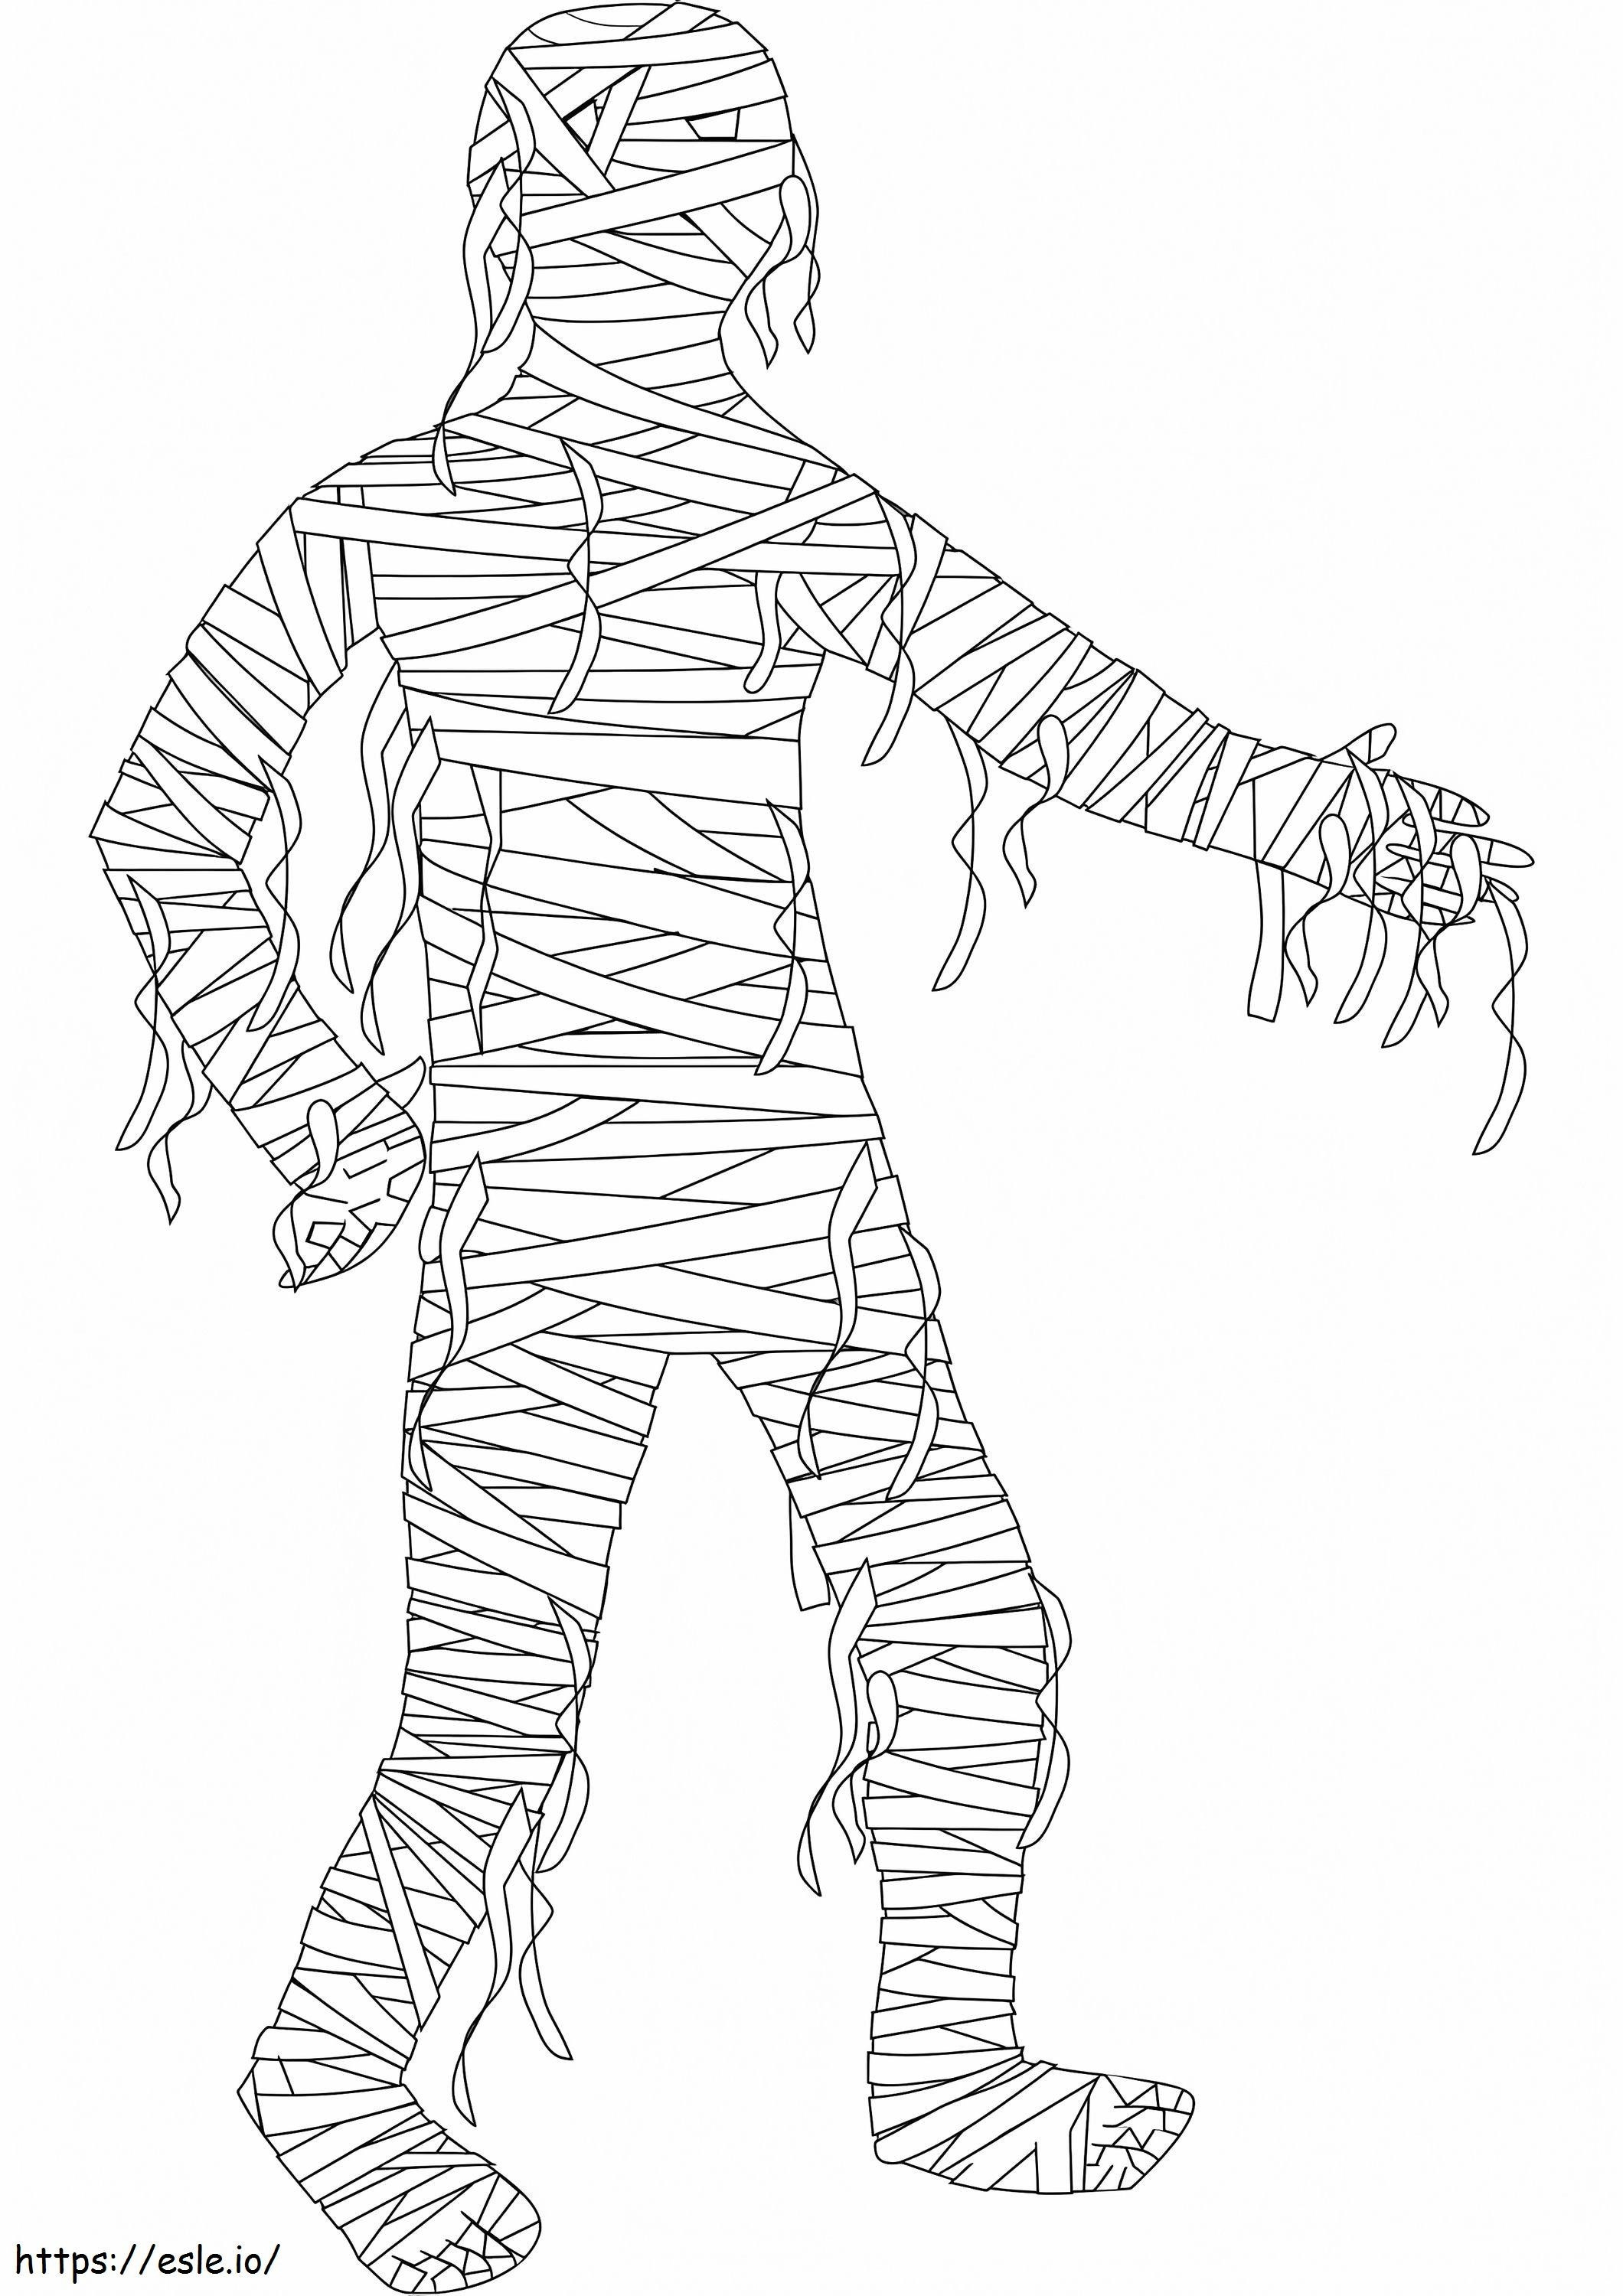 Gruselige Mumie-Malseite ausmalbilder